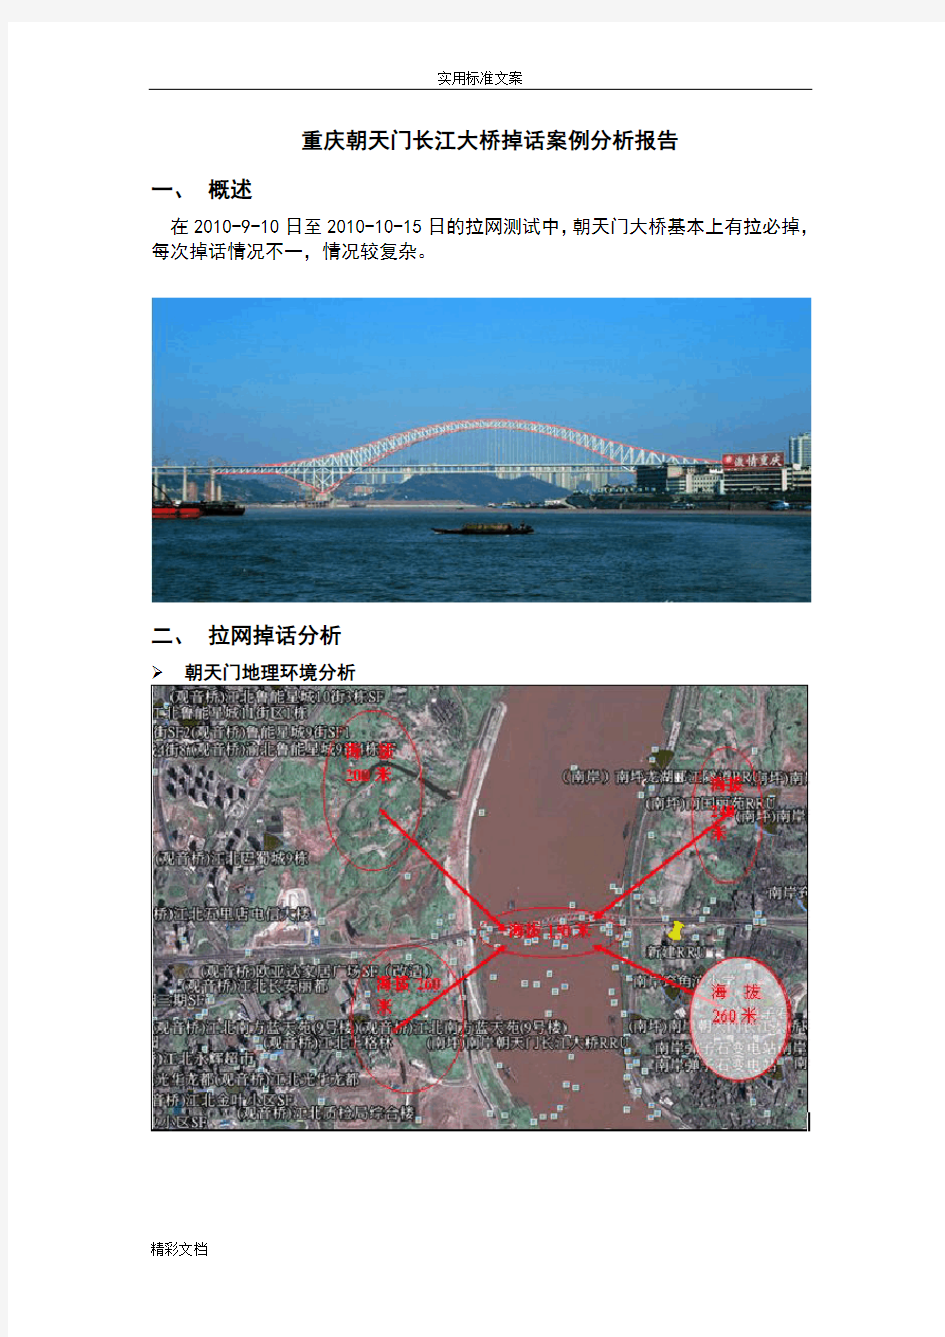 朝天门长江大桥掉话案例分析报告报告材料报告材料